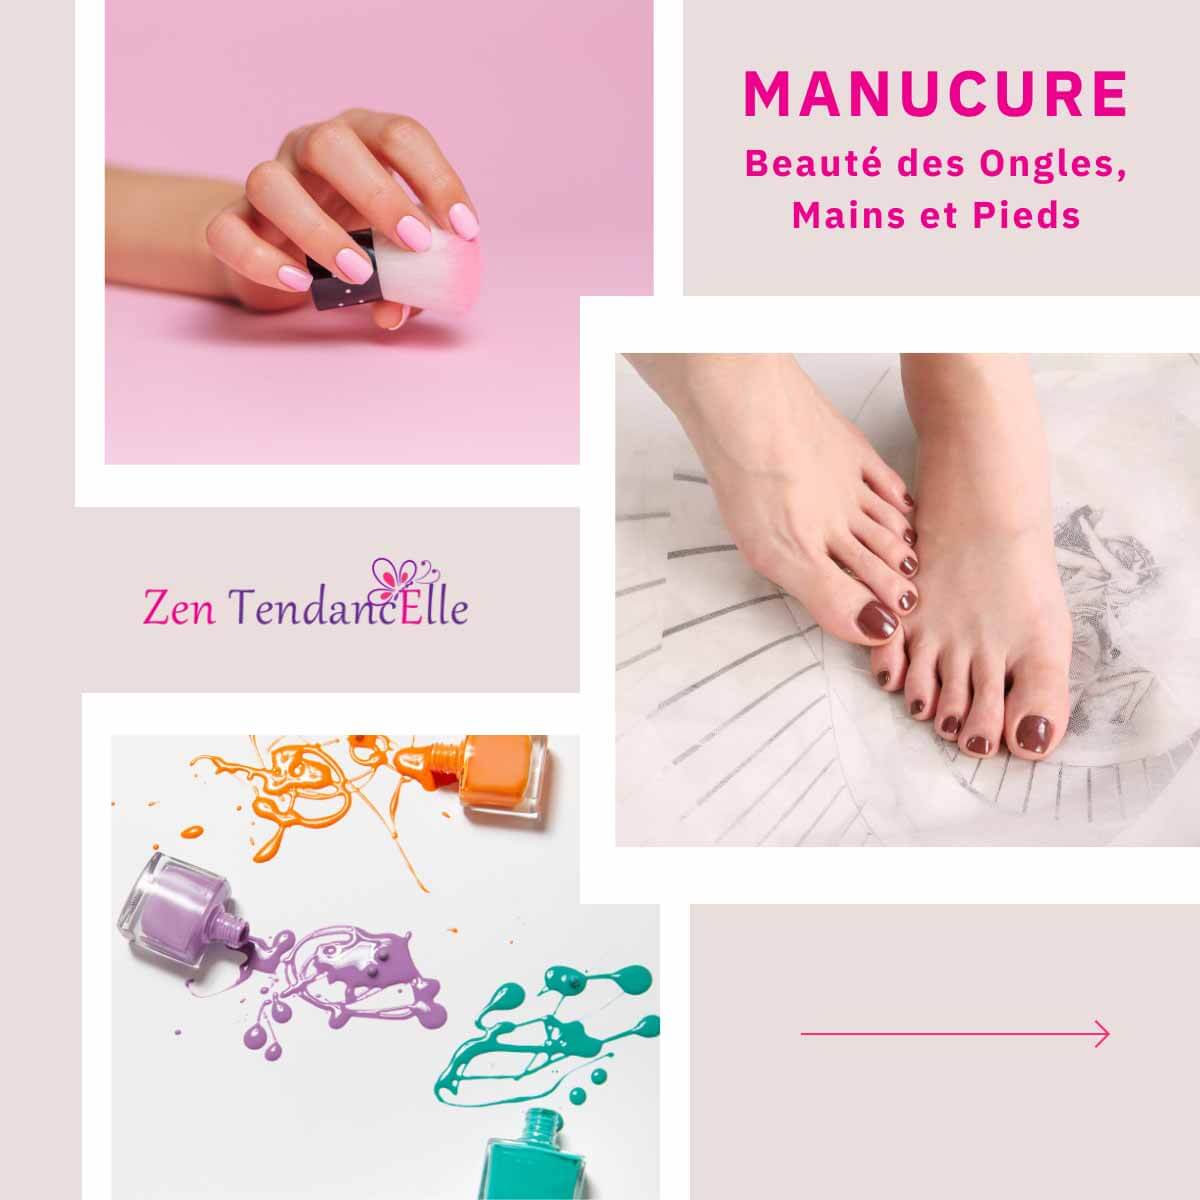 Manucure_Beaute_des_ongles_mains_et_pieds_AM-Cosmetiques.jpg